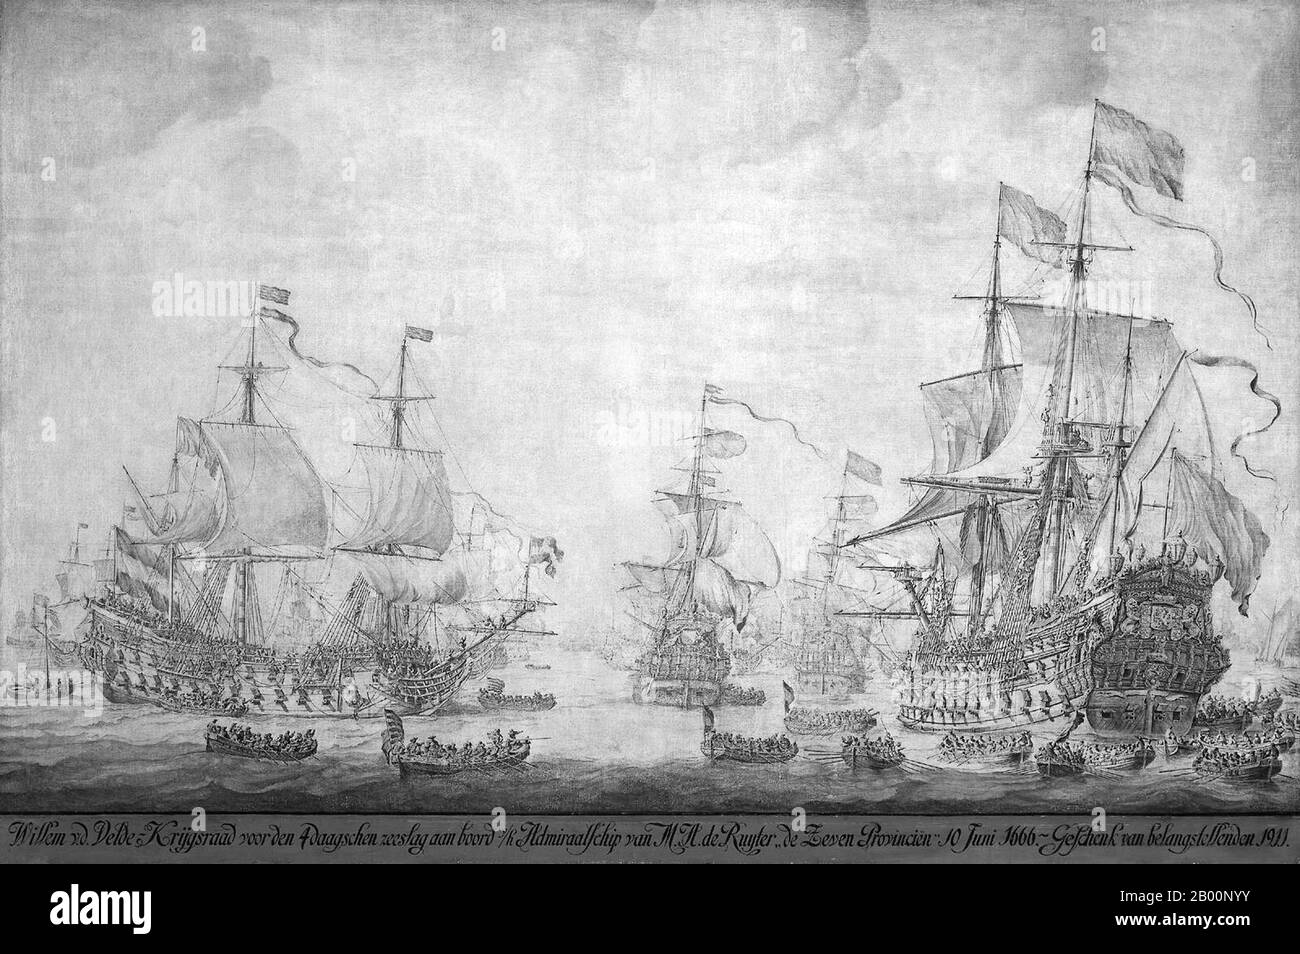 Países Bajos: "Consejo de Guerra a bordo de las "siete Provincias", buque insignia de Michiel Adriaensz de Ruyter, 10 de junio de 1666, antes de la batalla de cuatro días". Tinta sobre pintura de lienzo por Willem van de Velde el Viejo (c. 1611-1693), finales del siglo 17. La batalla de cuatro días (1-4 de junio de 1666), también conocida como la lucha de cuatro días, fue una batalla naval durante la Segunda Guerra Anglo-Holandesa. Combatido en el sur del Mar del Norte, comenzó frente a la costa flamenca antes de terminar cerca de la costa inglesa, uno de los más largos combates navales en la historia. Fue una victoria holandesa, con graves daños a la flota inglesa. Foto de stock